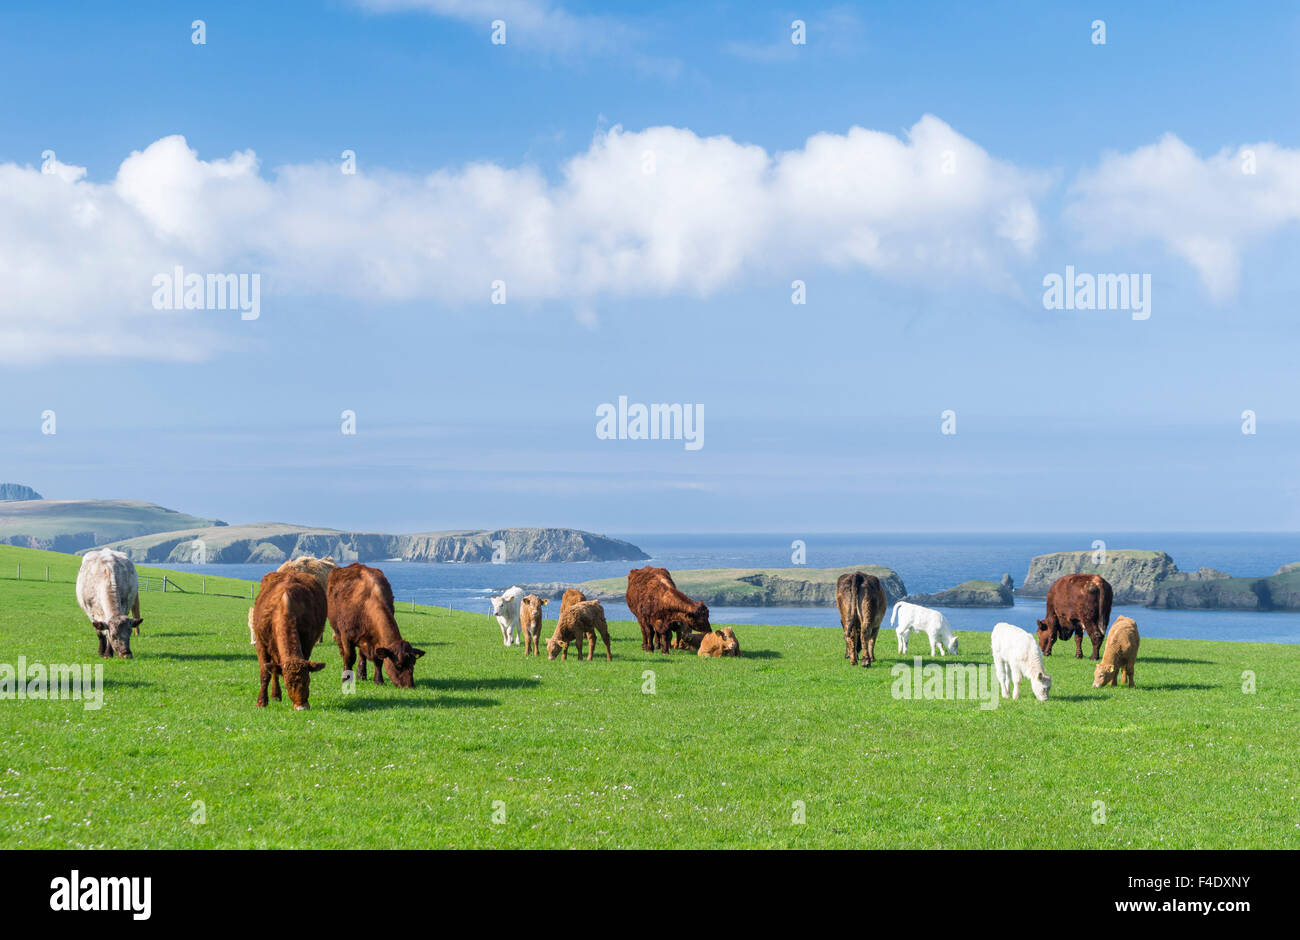 Cattle breeding, Shetland Islands, Scotland. (Large format sizes available) Stock Photo